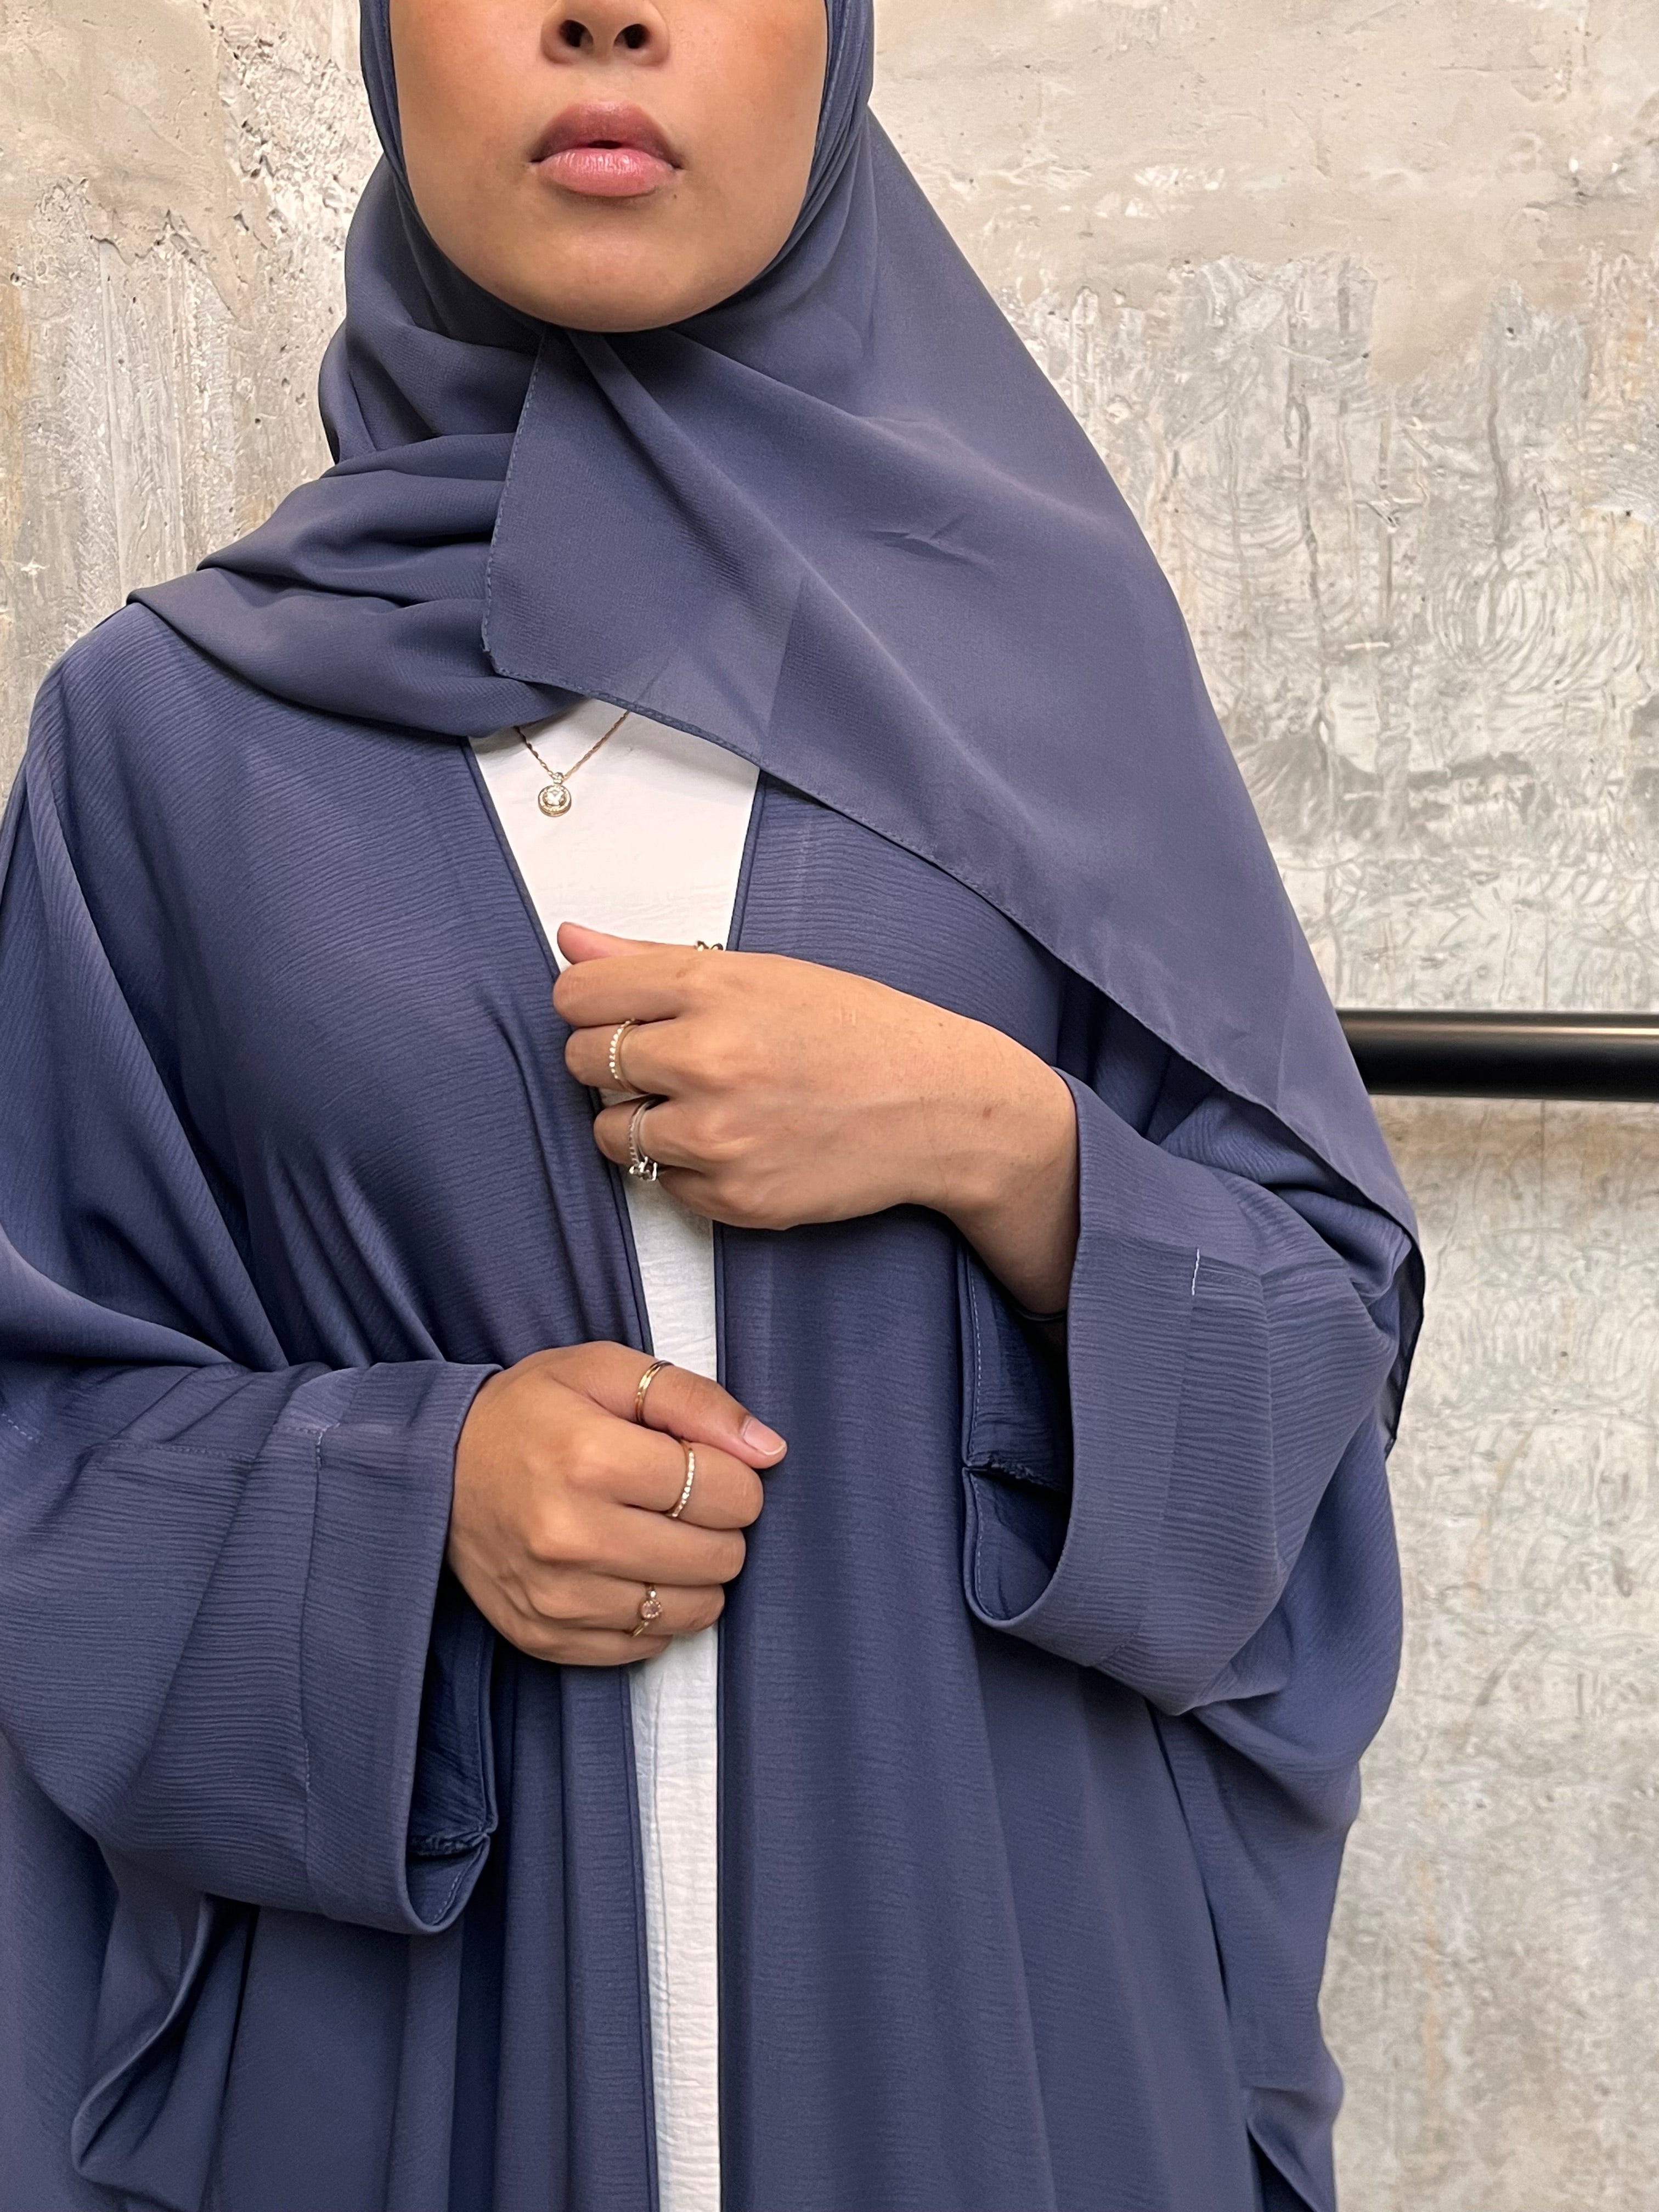 Maria Wrap Abaya + Hijab - HAWAA Clothing UK